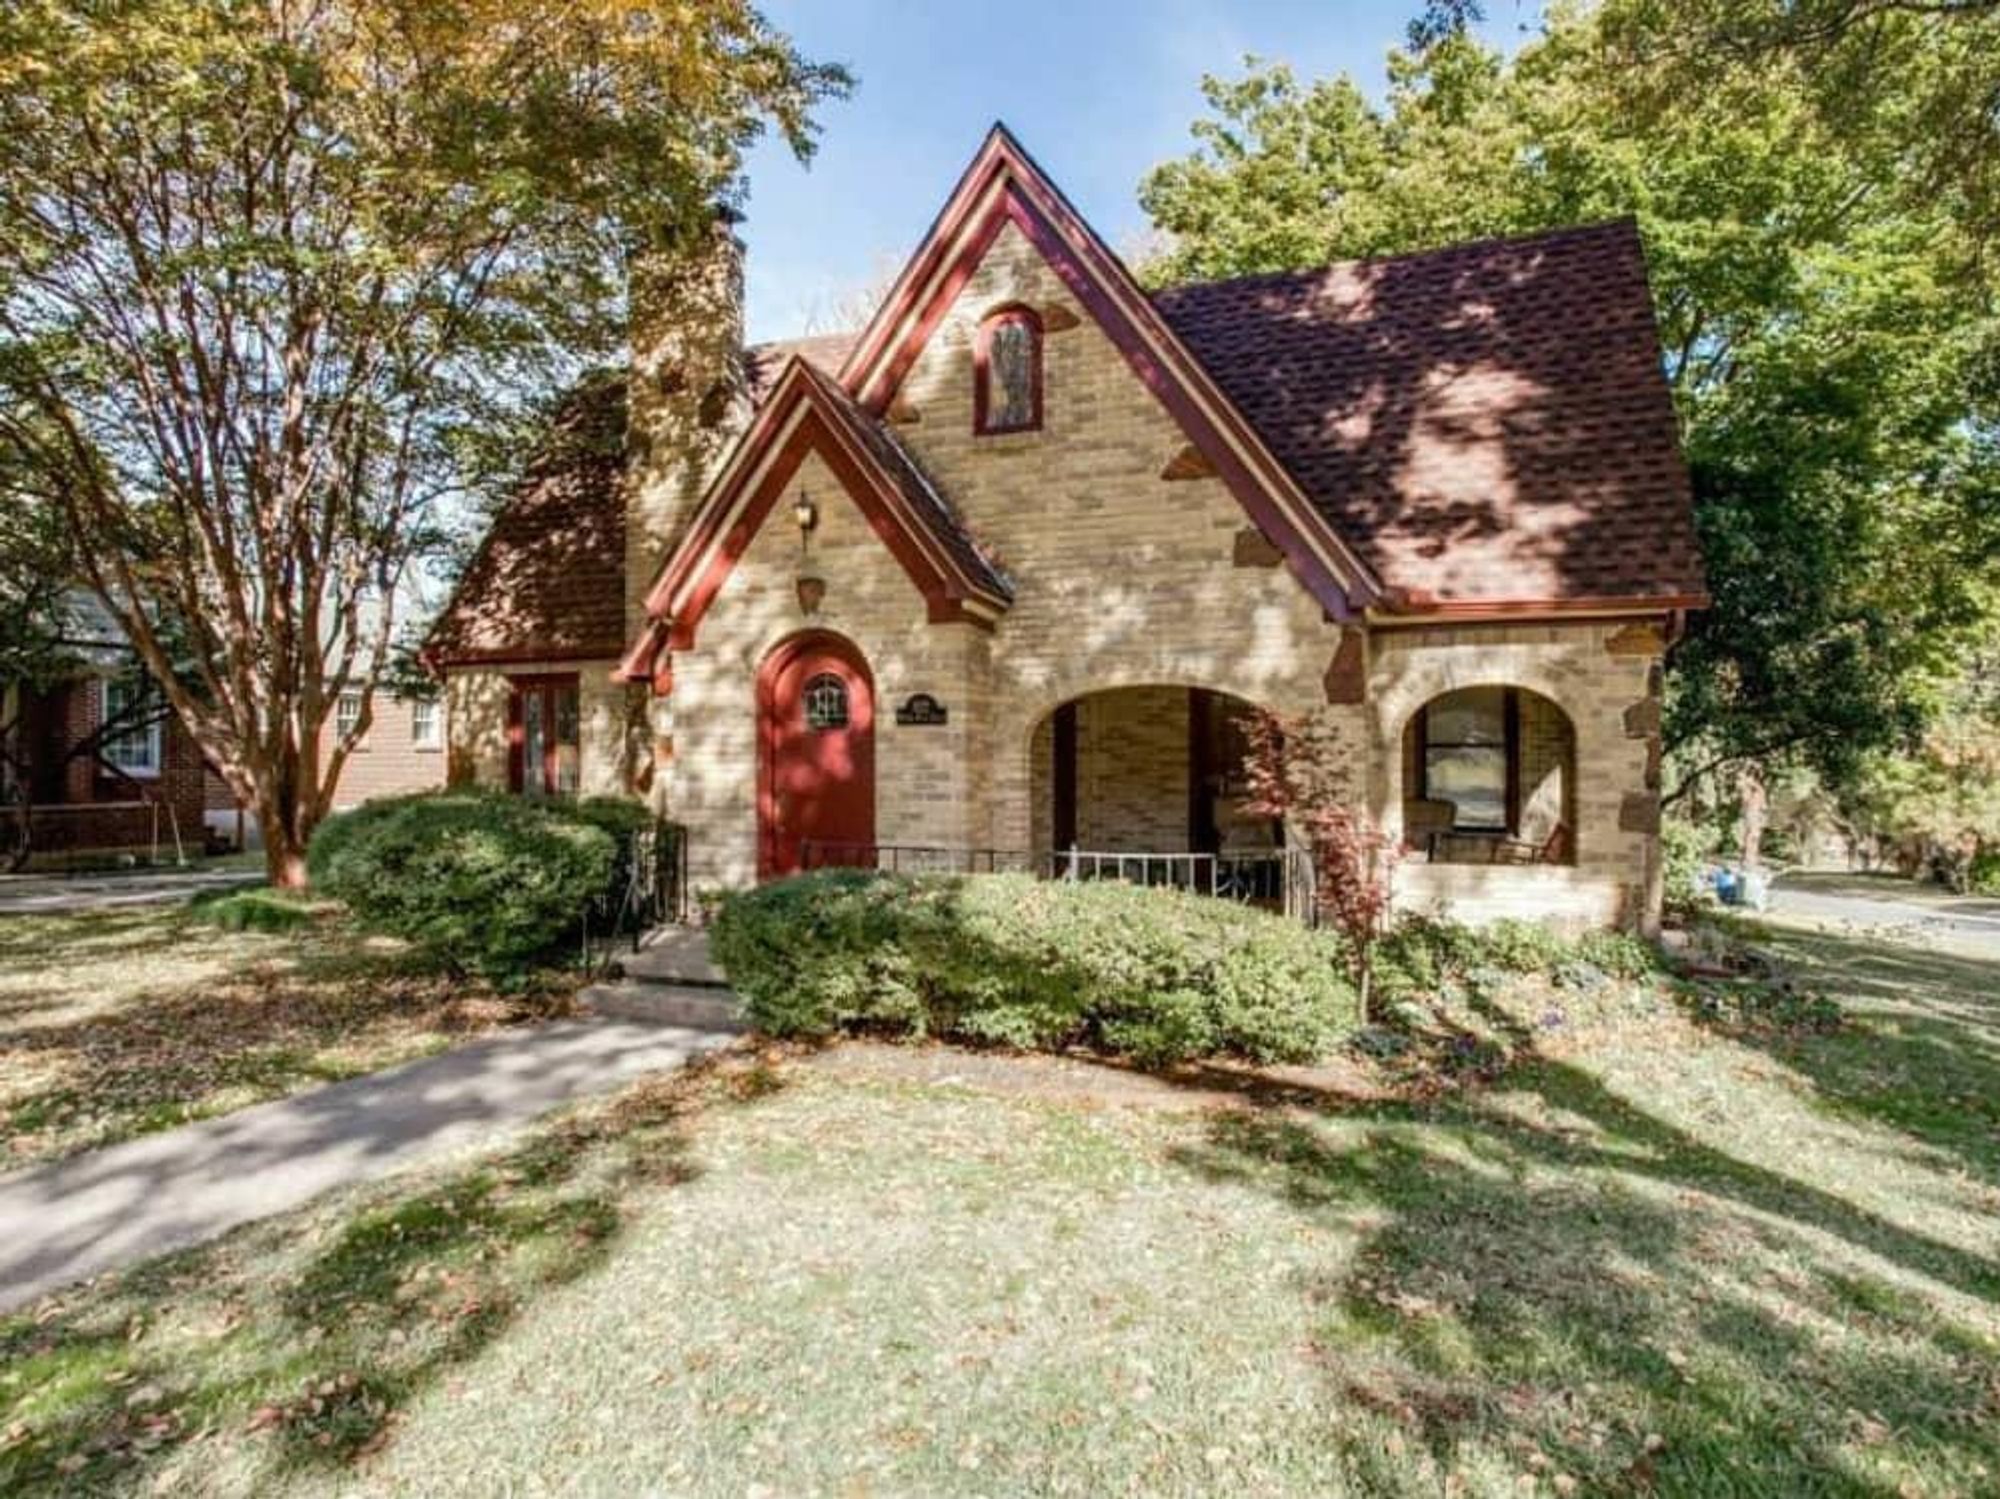 522 Monte Vista house for sale Dallas